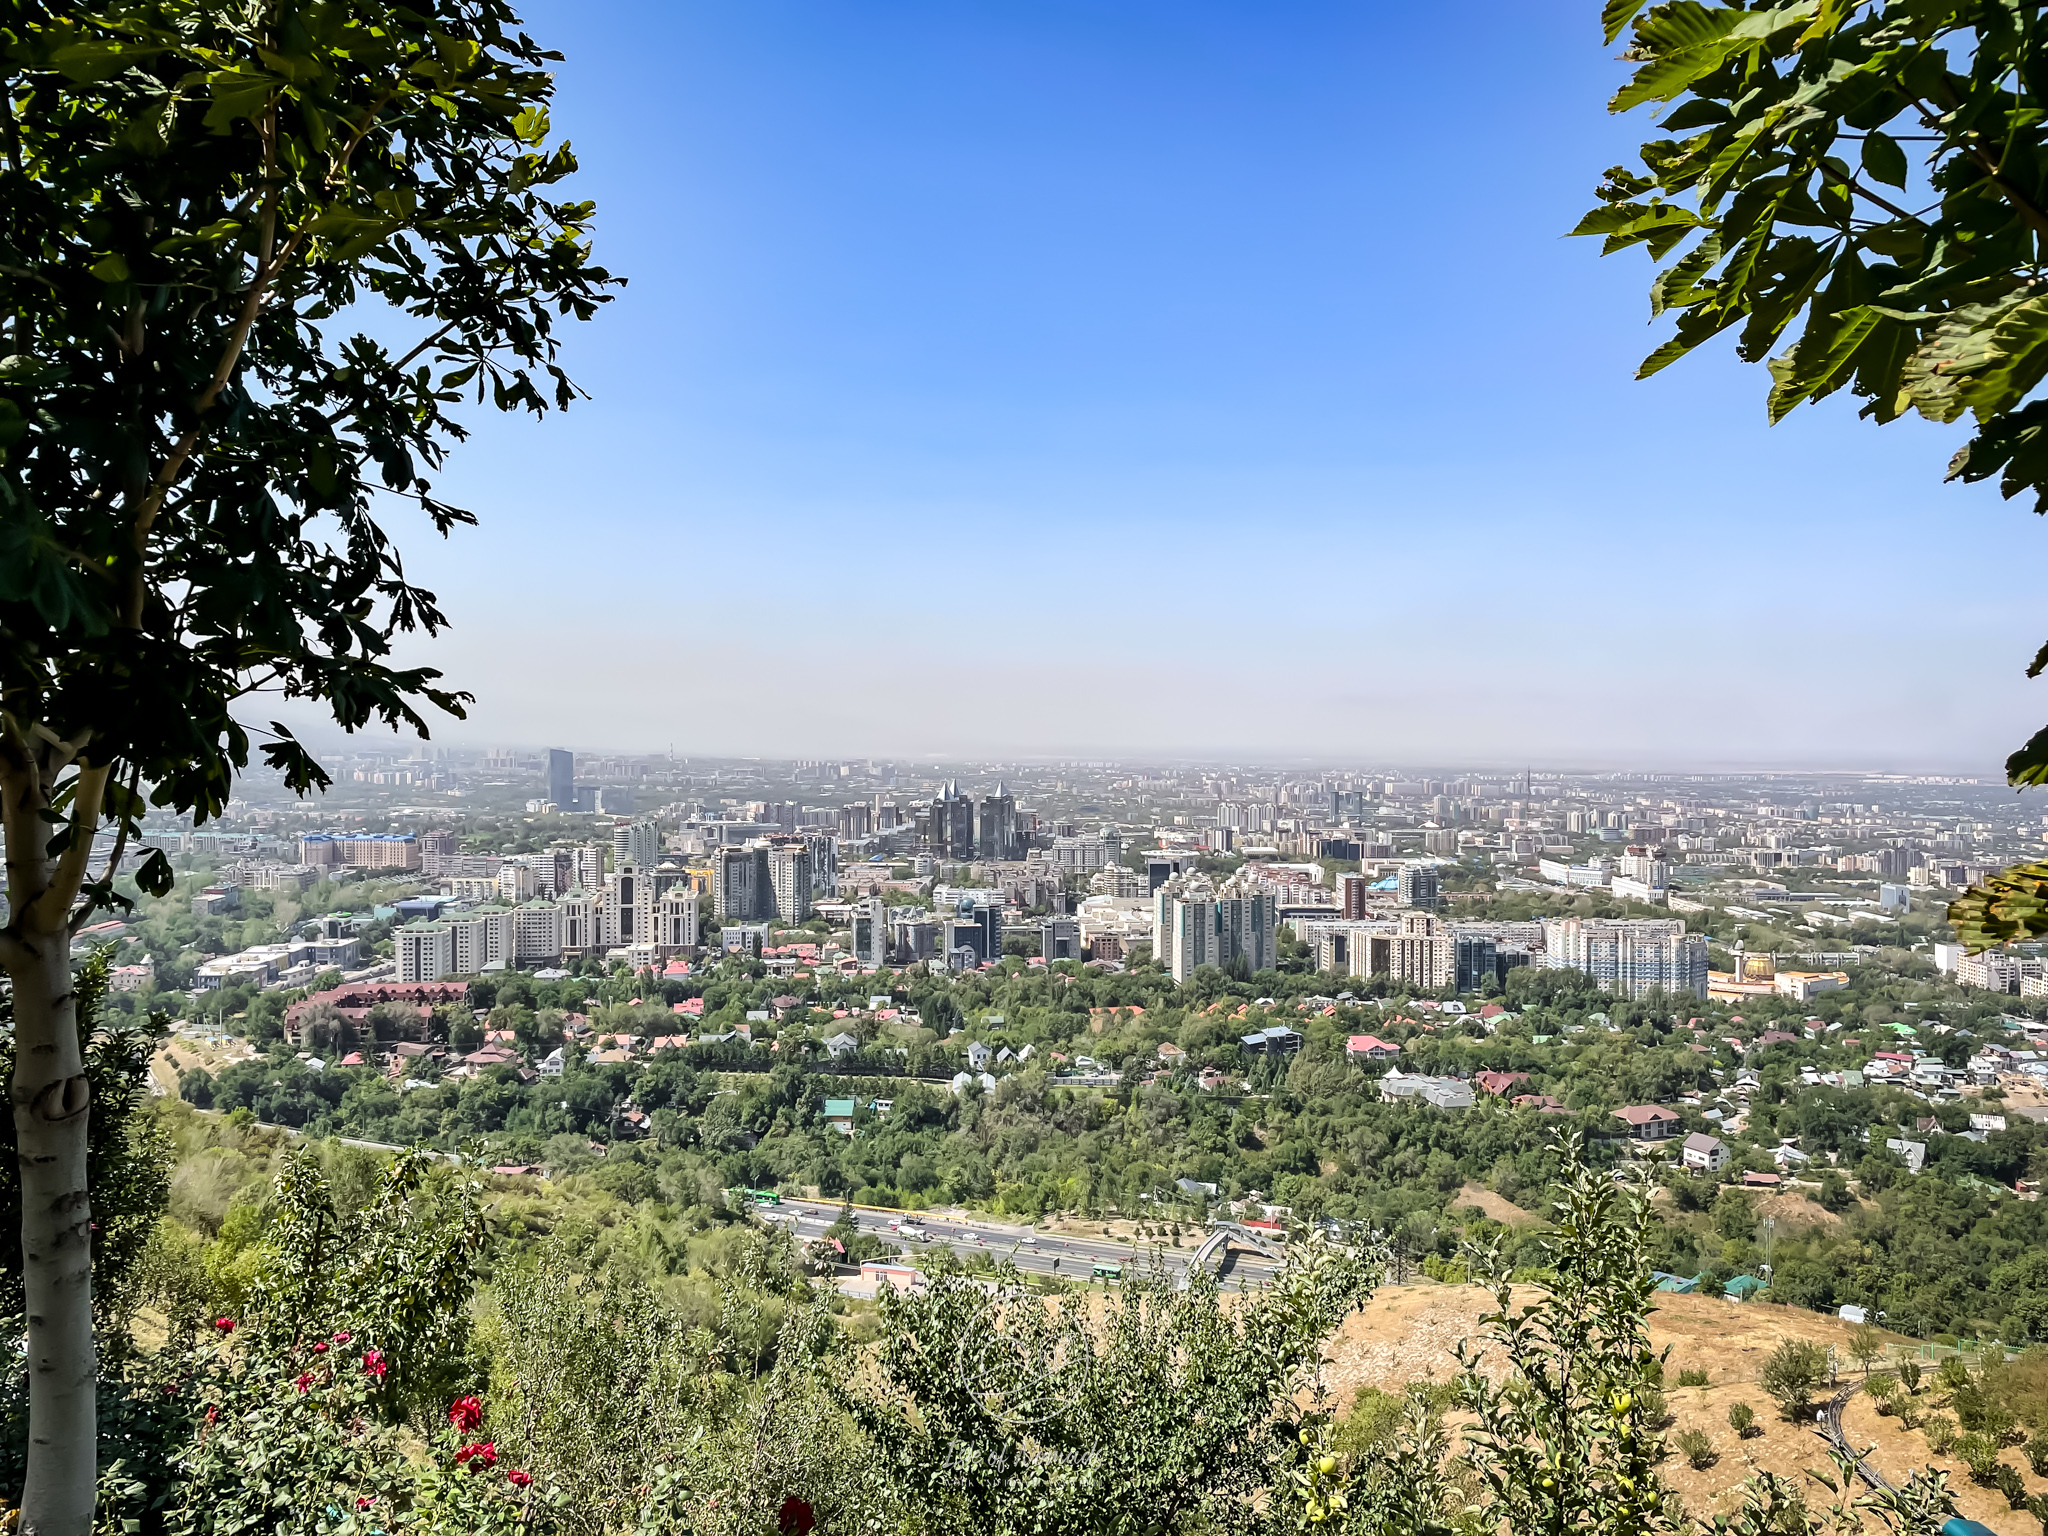 View on Almaty from the Koktobe mountain